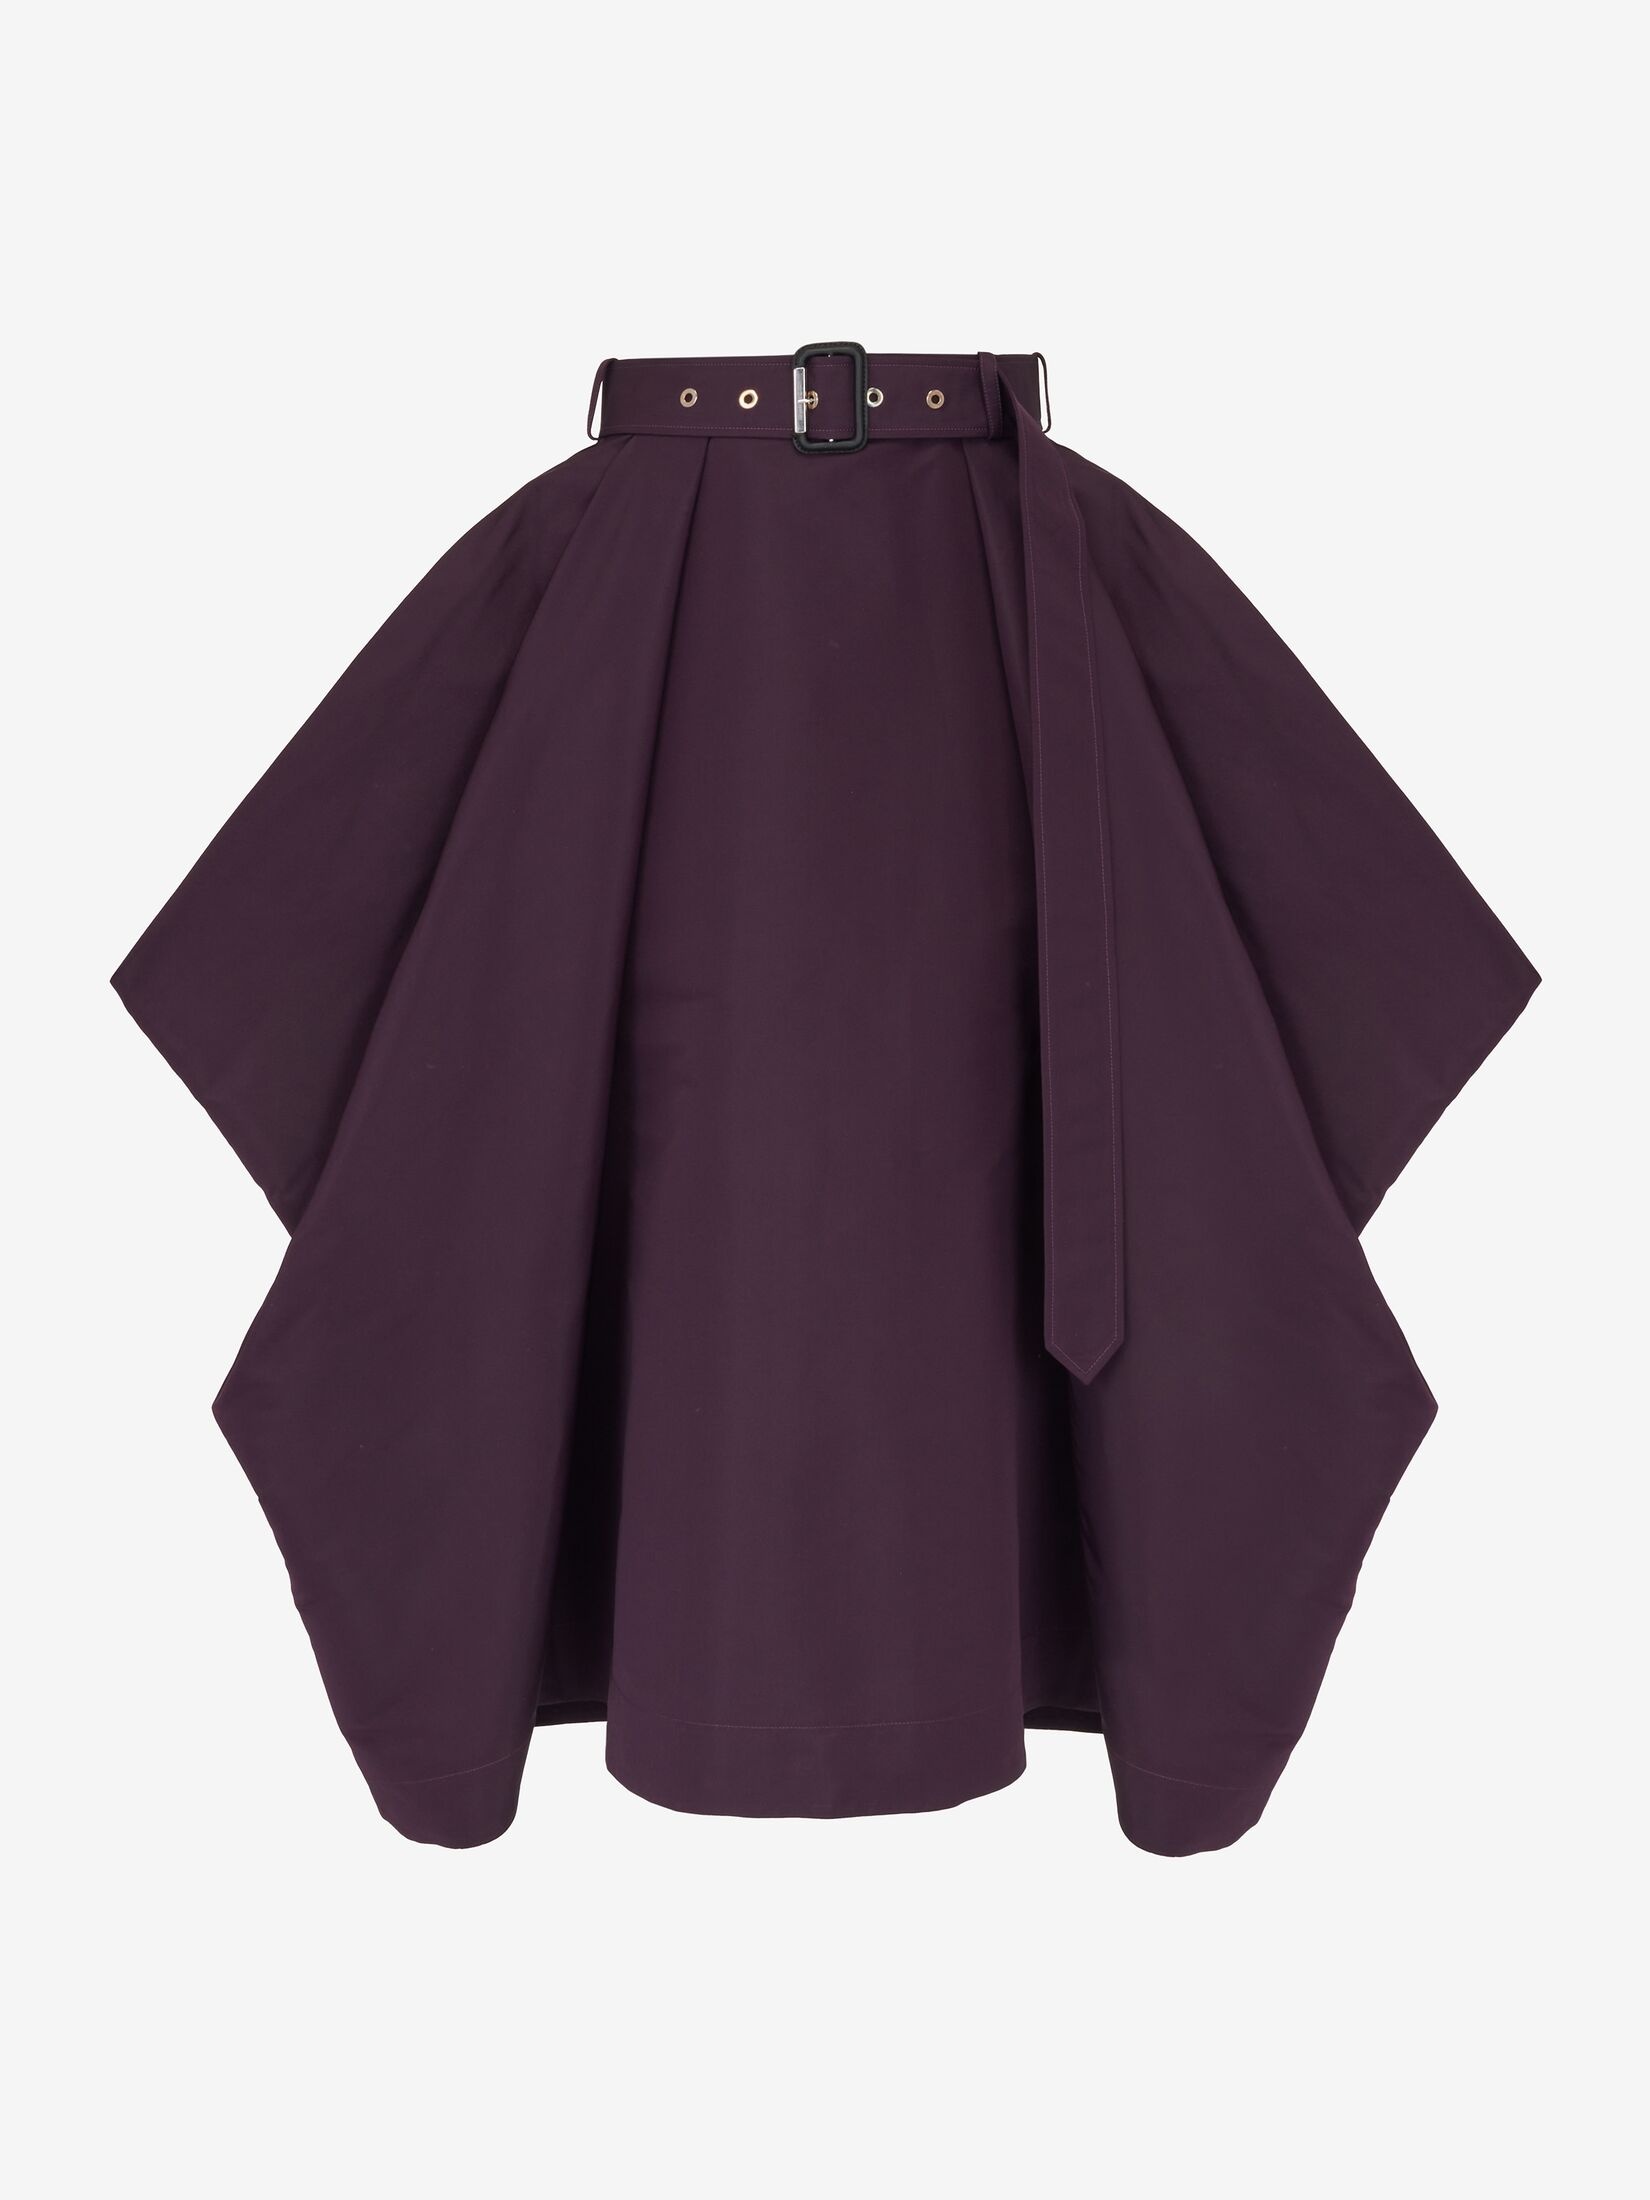 Women's Trench Drape Skirt in Night Shade - 1